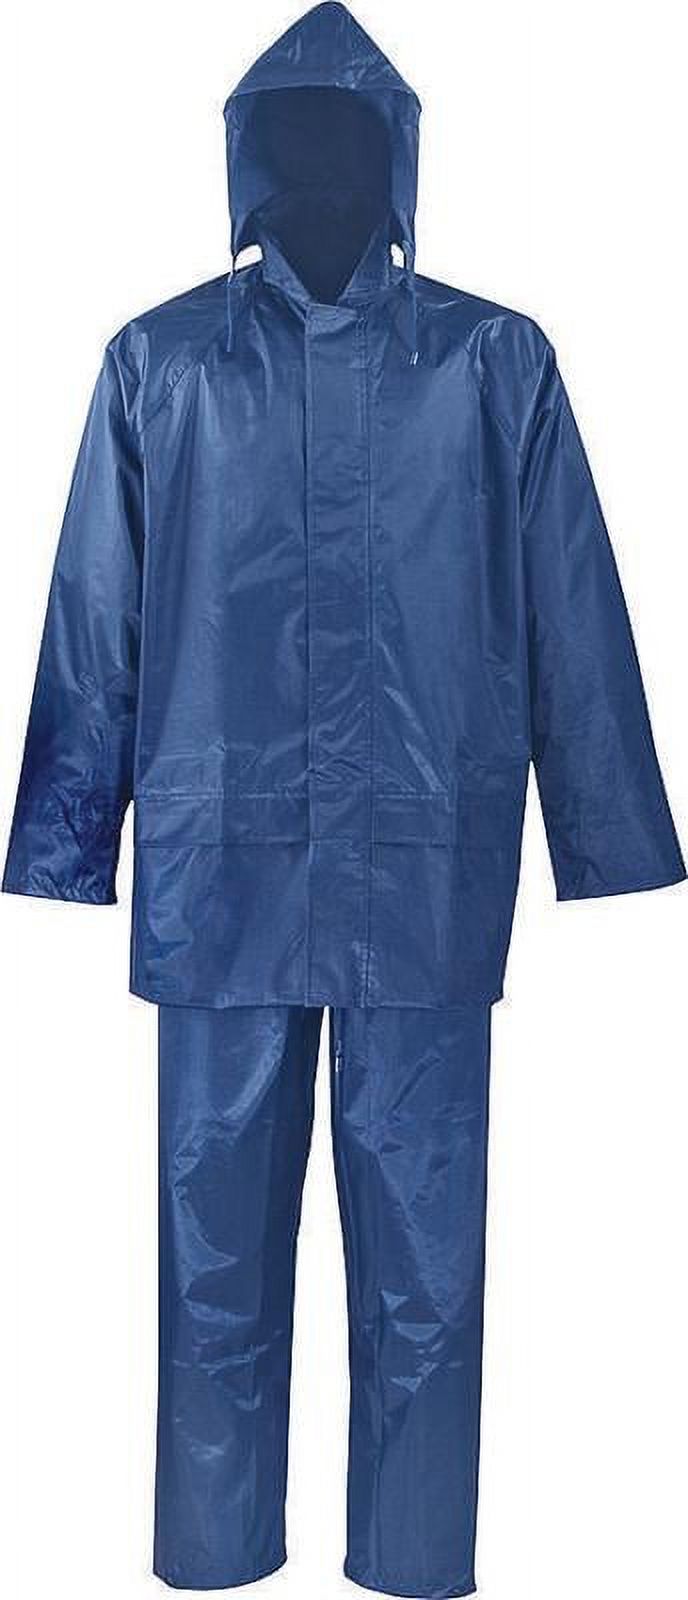 SPU045-XXXL 2-Piece Rainsuits, 3X-Large, Polyester, PVC, Blue - image 1 of 2